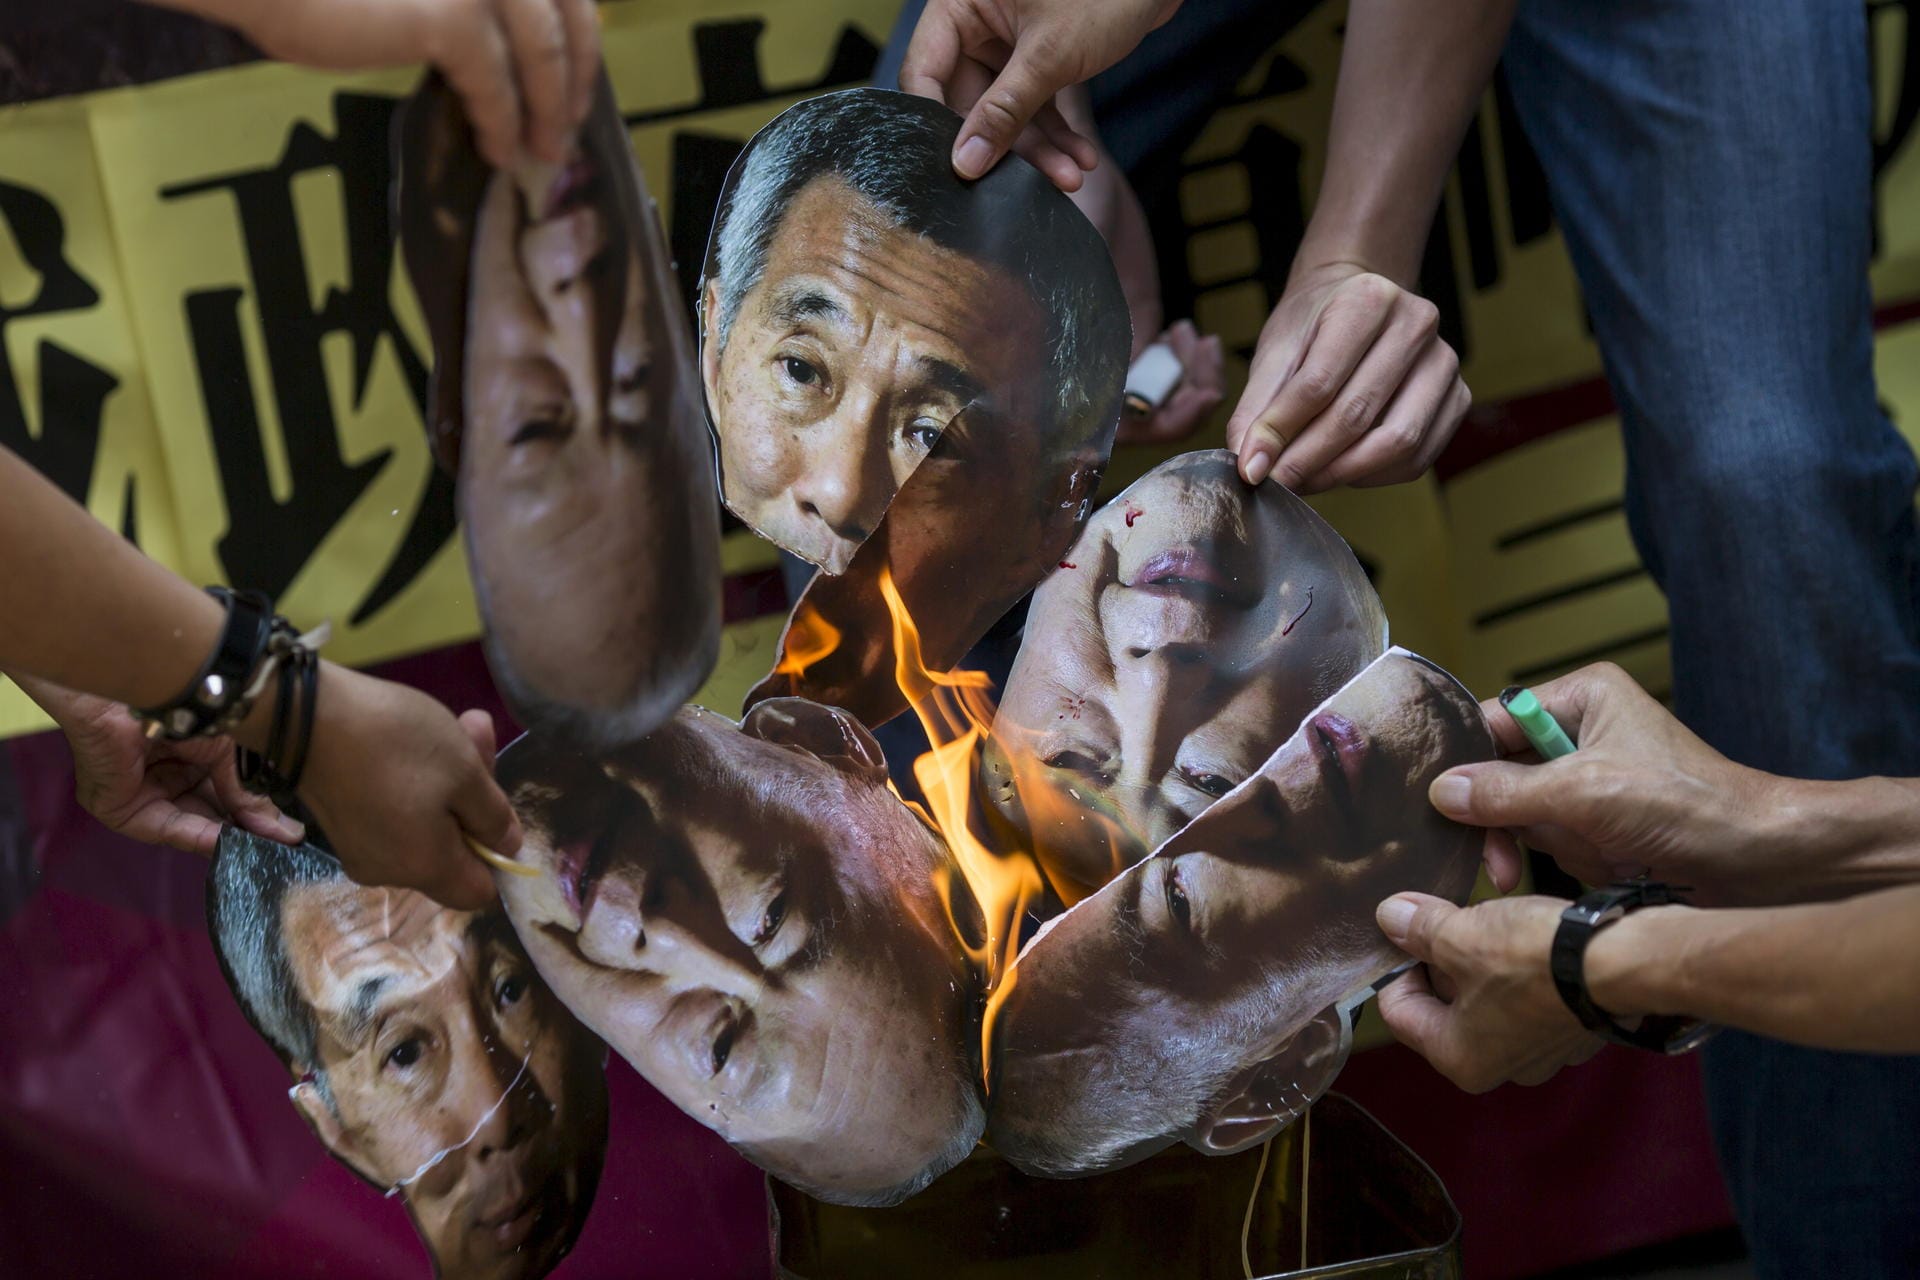 Verbotene Demonstration: Menschen protestieren in Hong Kong gegen Premierminister Lee Hsien Loong. Sie fordern die Freilassung eines Bloggers, der wegen einer geposteten Karikatur zu einer Gefängnisstrafe verurteilt wurde. (Archivfoto von 2015)